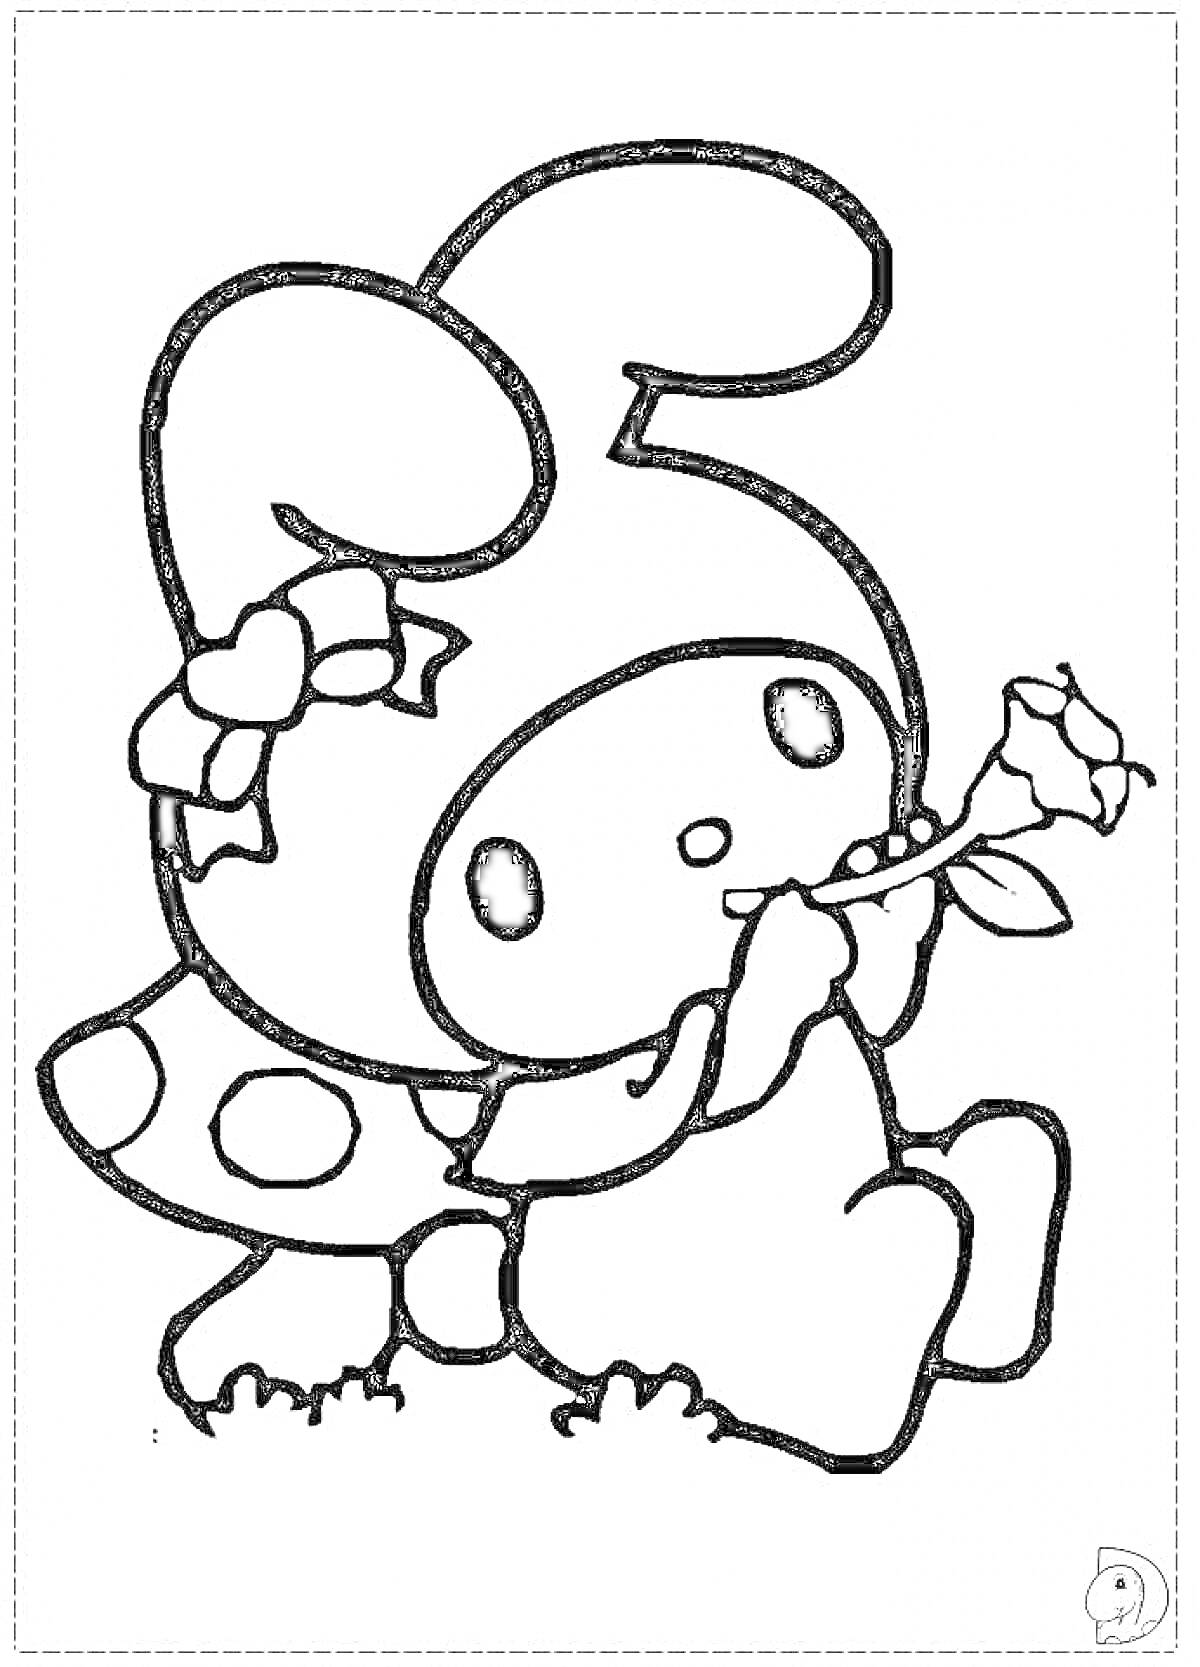 Раскраска Персонаж в костюме с ушками сидит у гриба и держит розу.